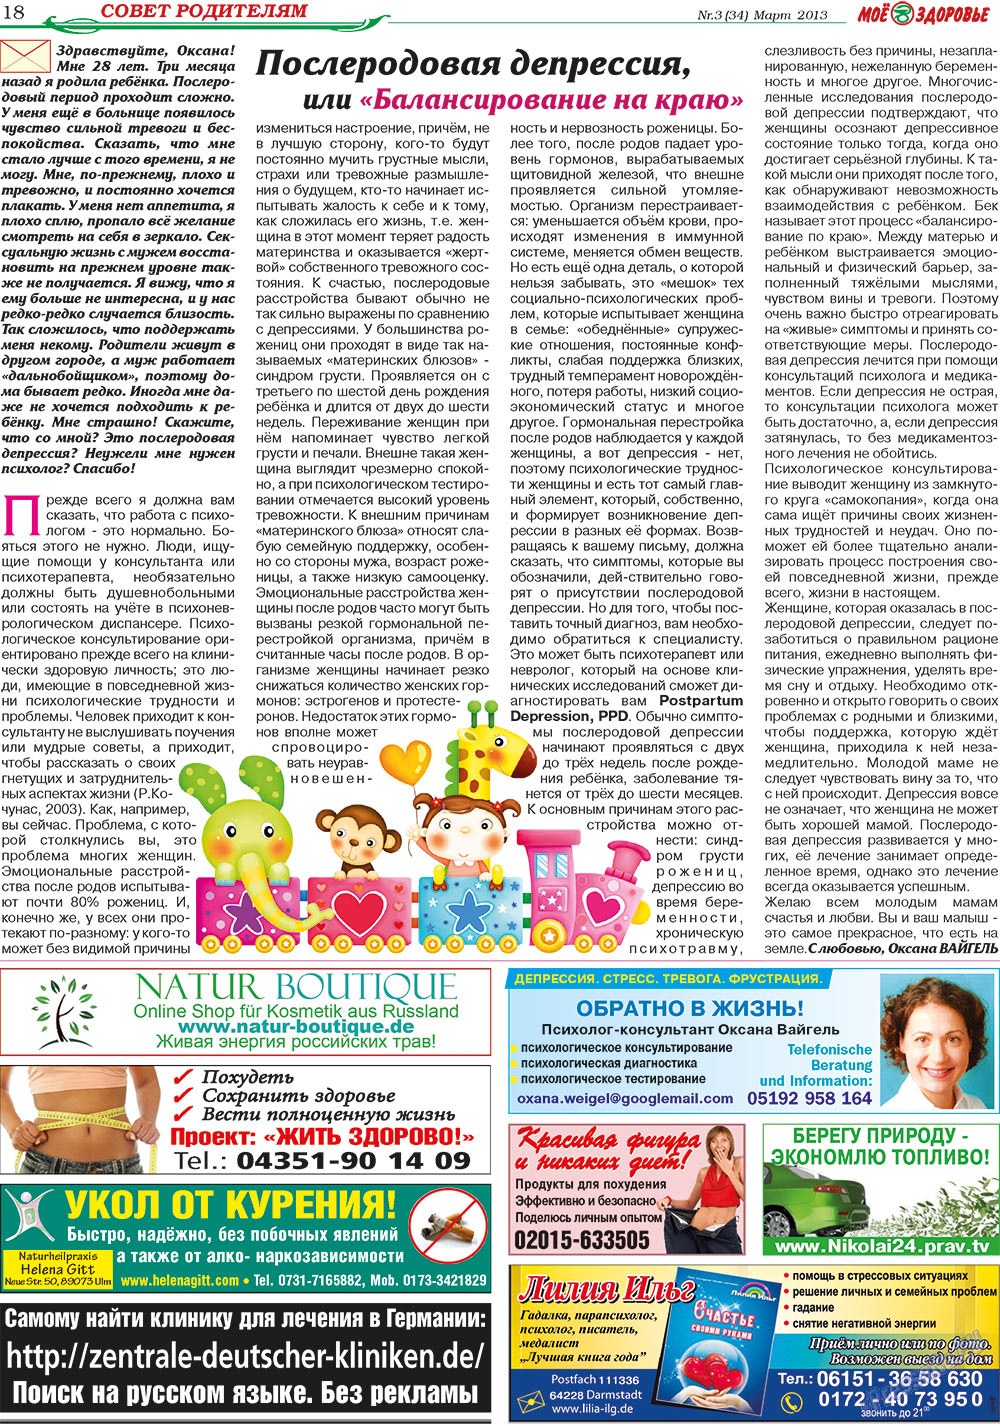 Кругозор, газета. 2013 №3 стр.18